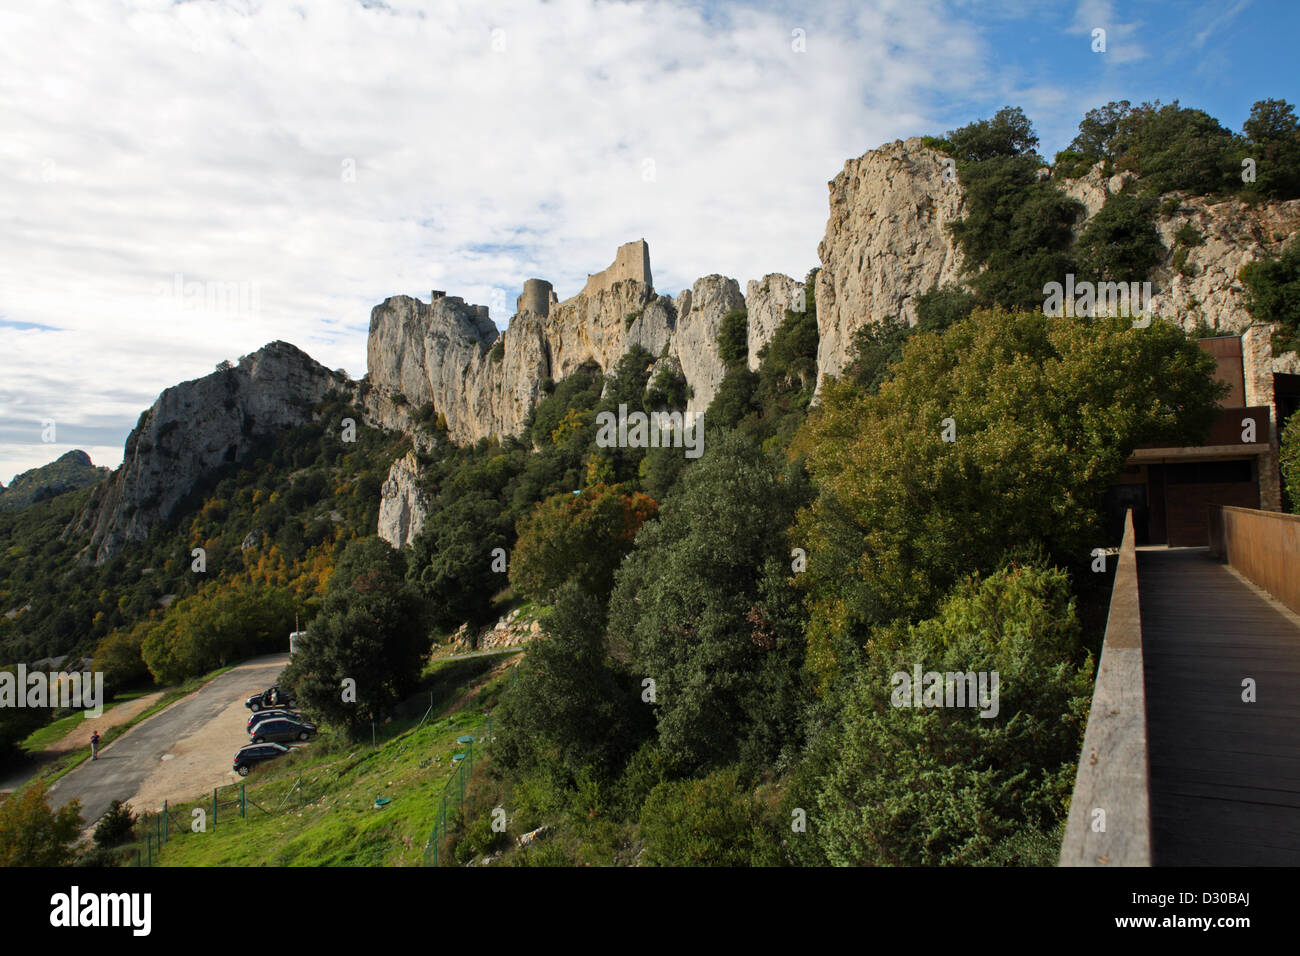 Peyrepertuse eines der Katharer-Burgen in den Pyrenäen an der Grenze von Frankreich und Spanien. Stockfoto